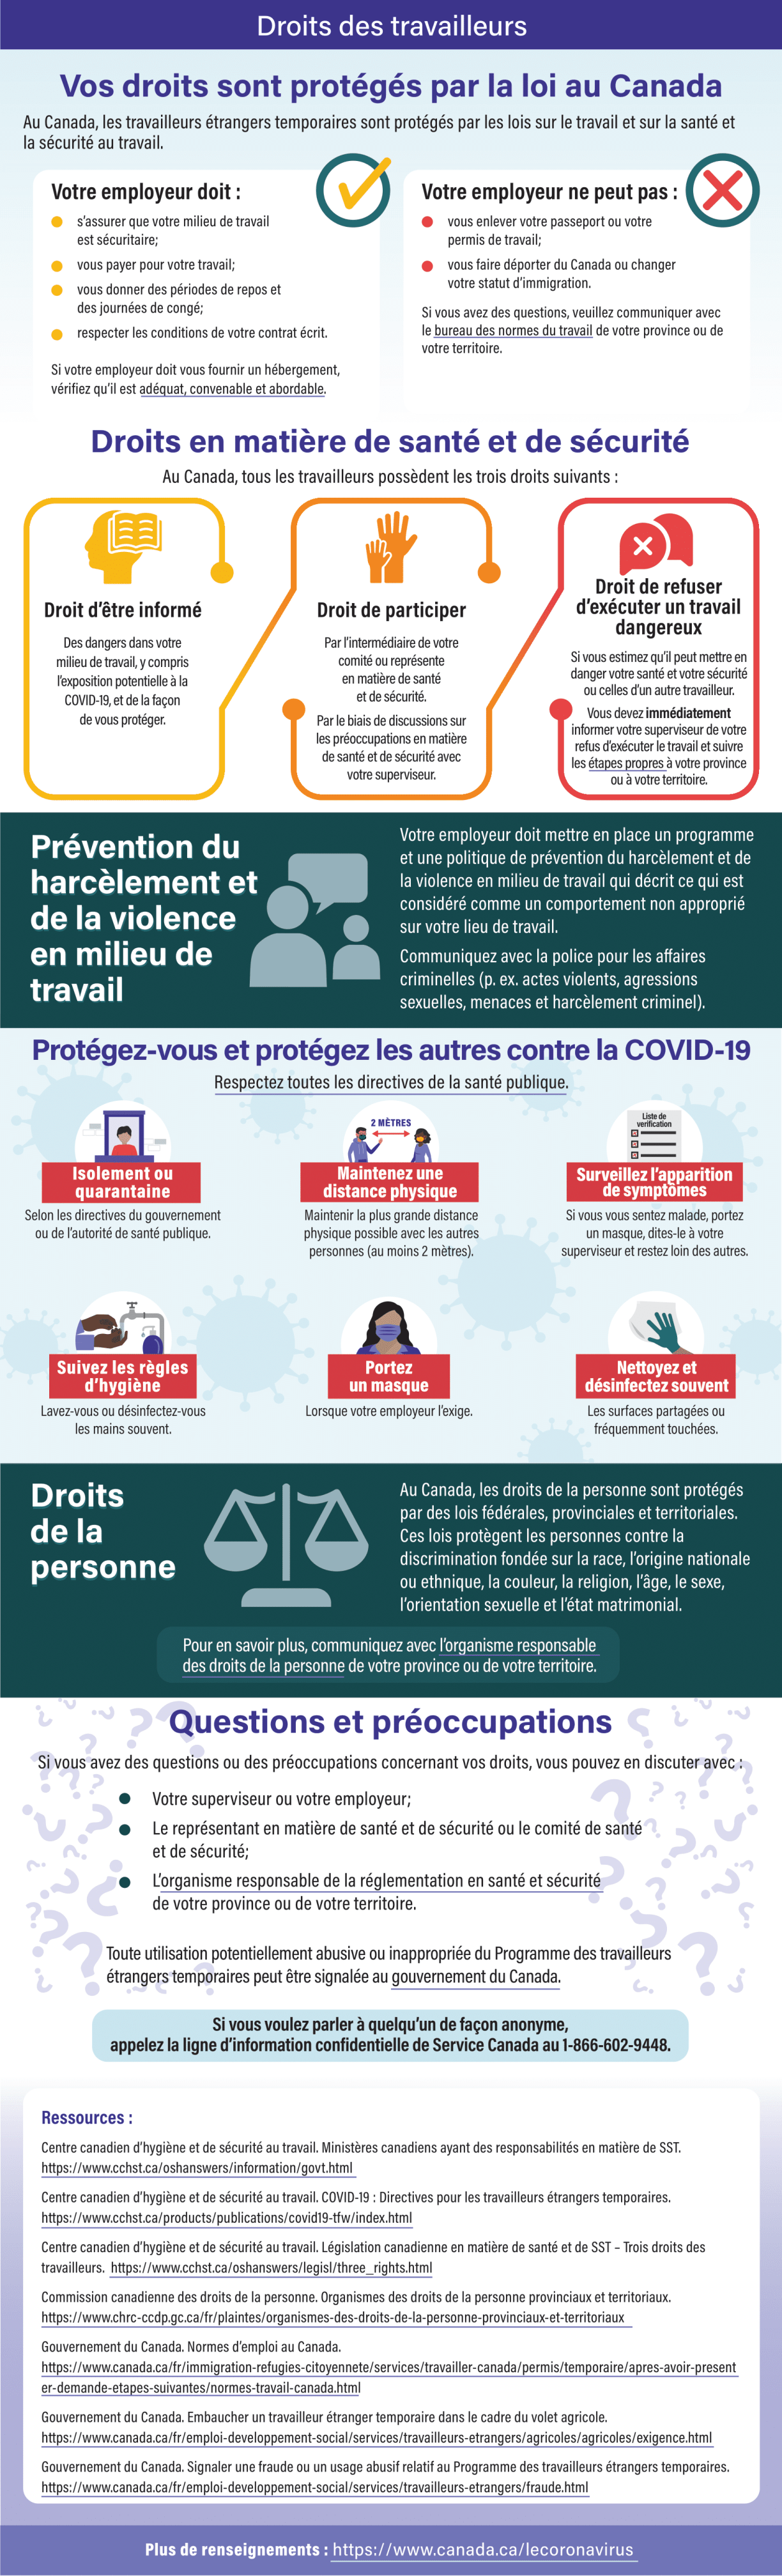 Infographie : COVID-19 : Droits des travailleurs